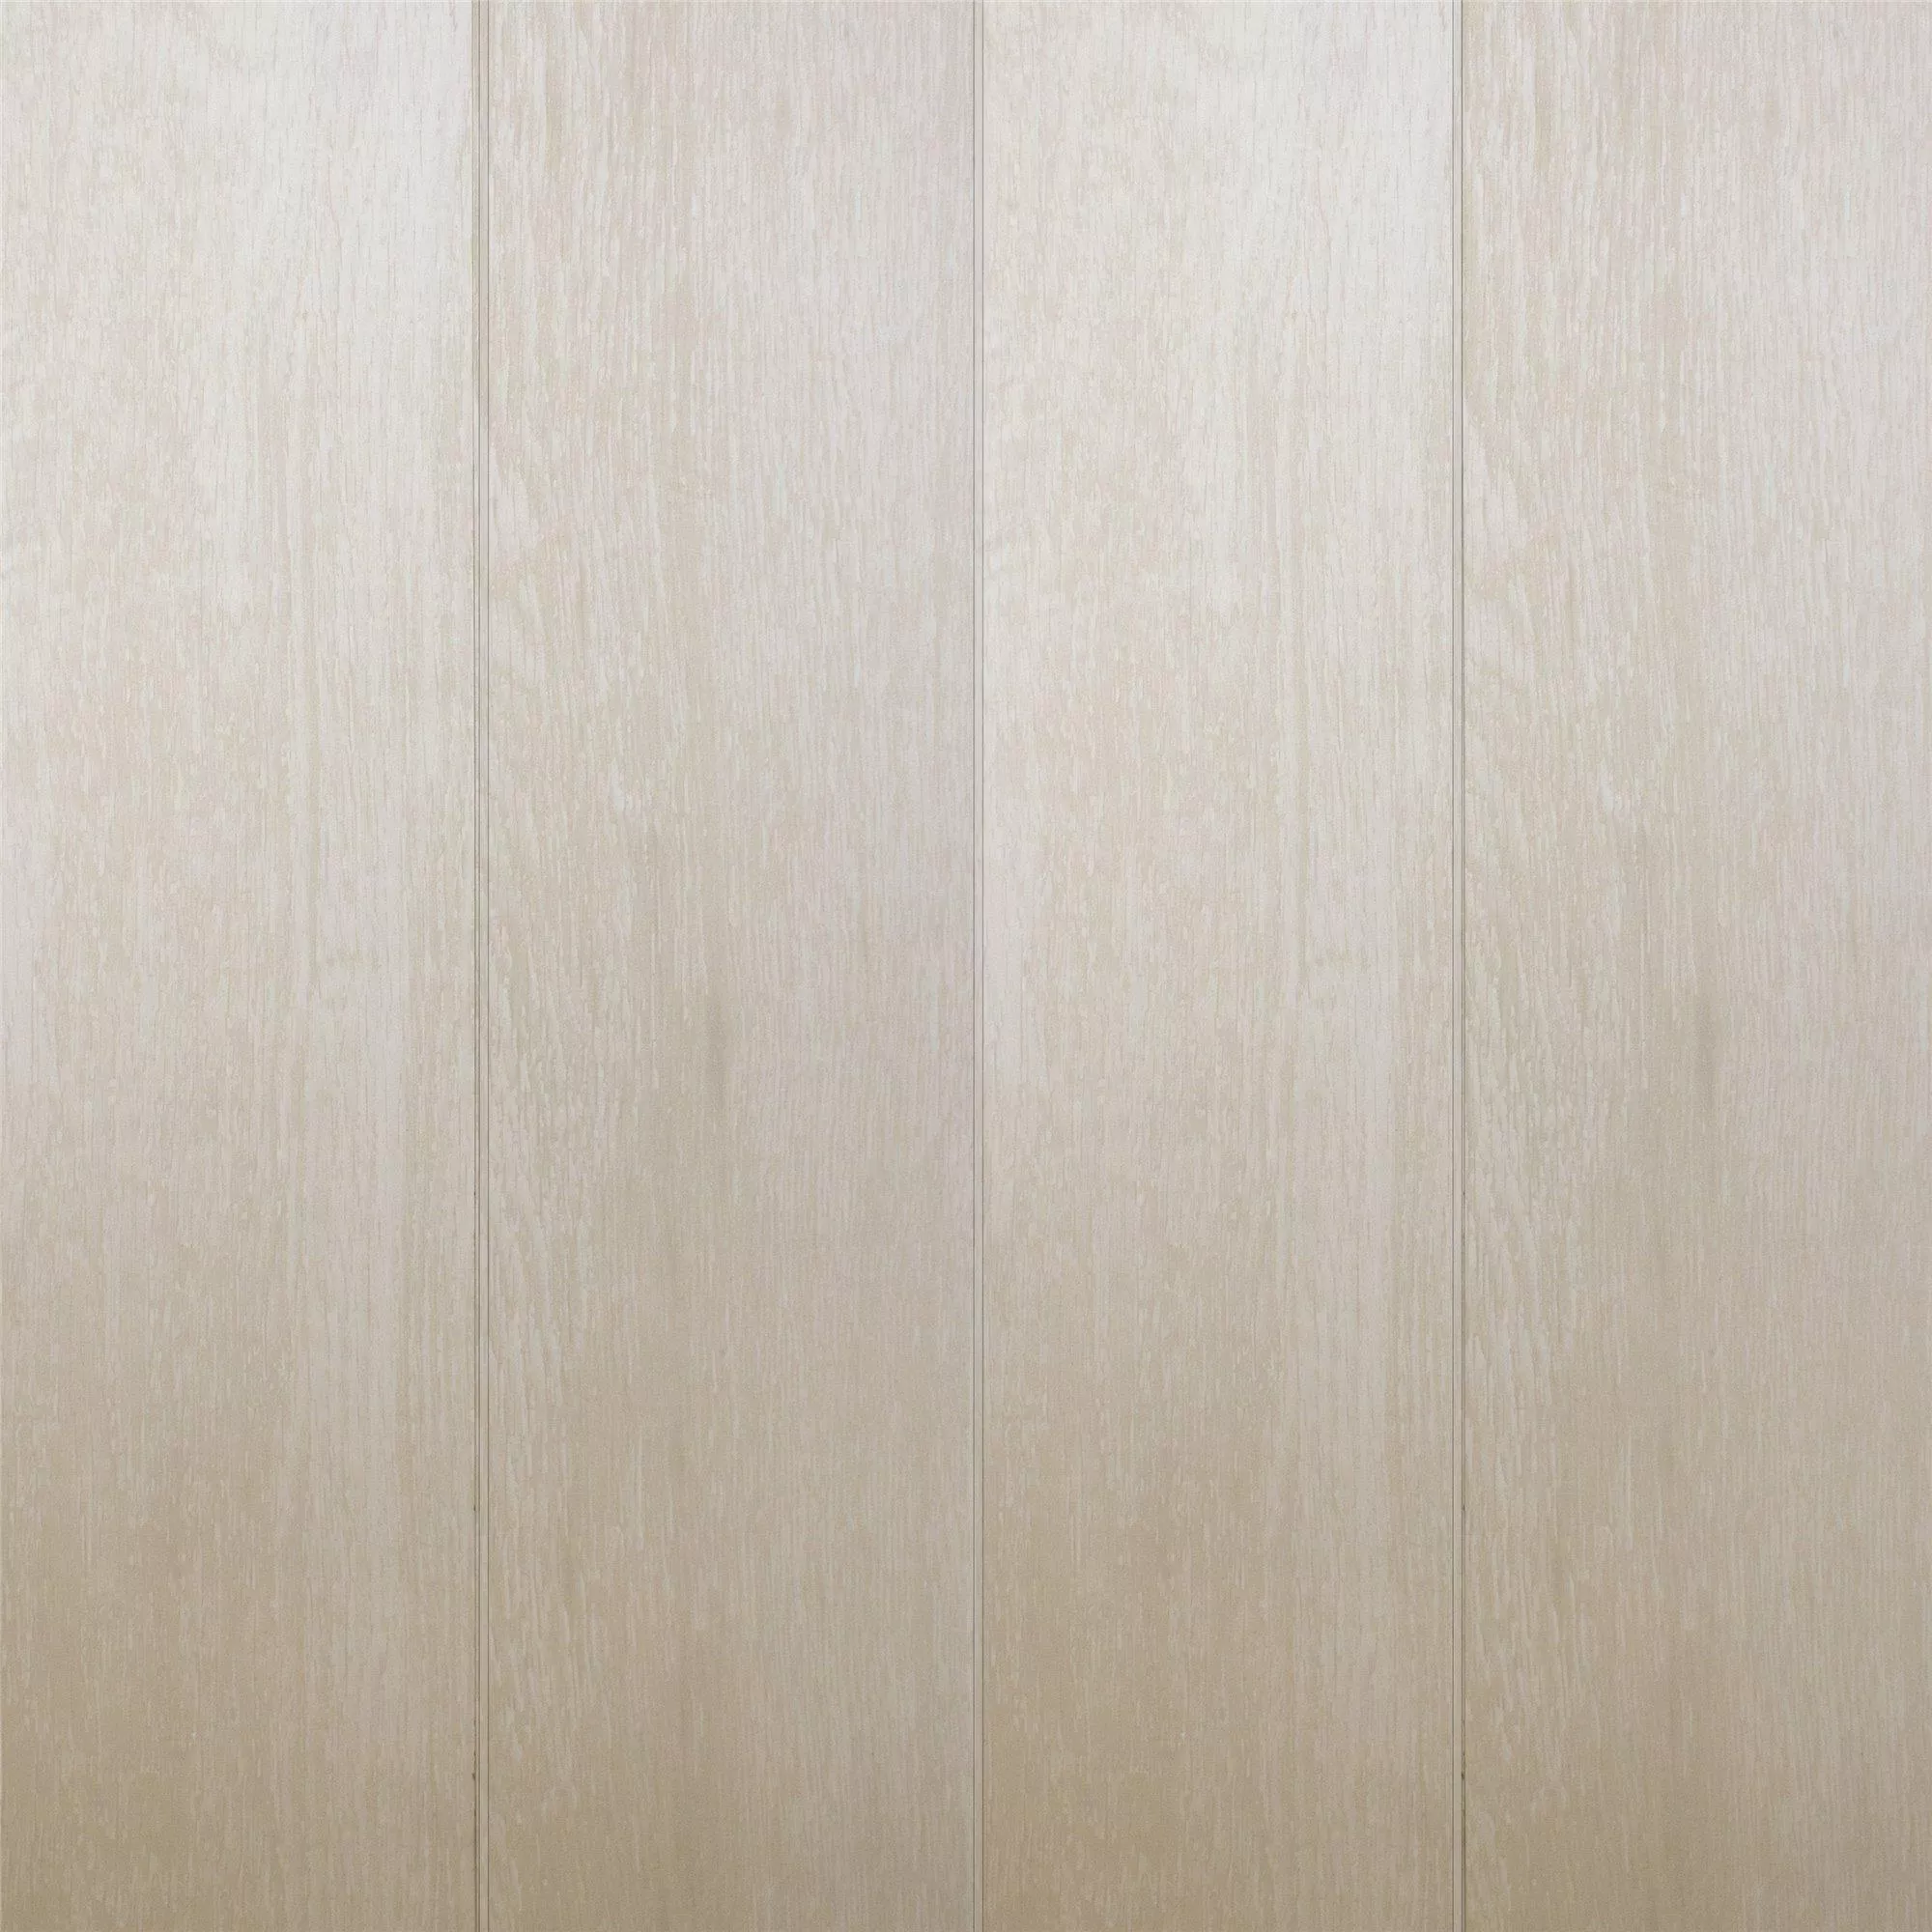 Próbka Płytki Podłogowe Herakles Wygląd Drewna White 20x120cm